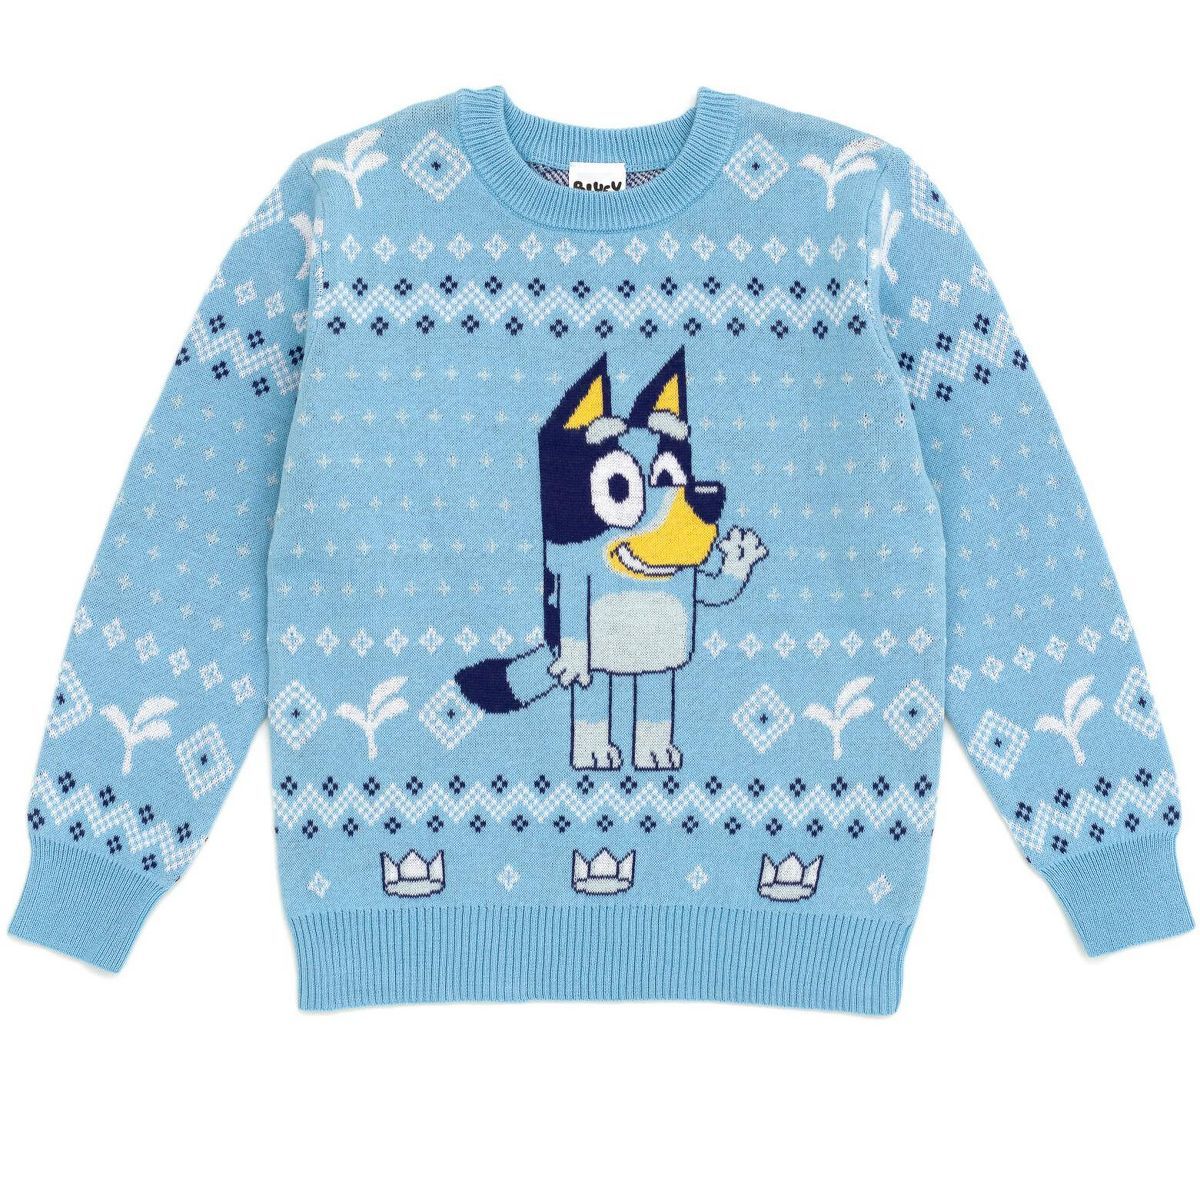 Bluey Matching Family Sweater Toddler | Target